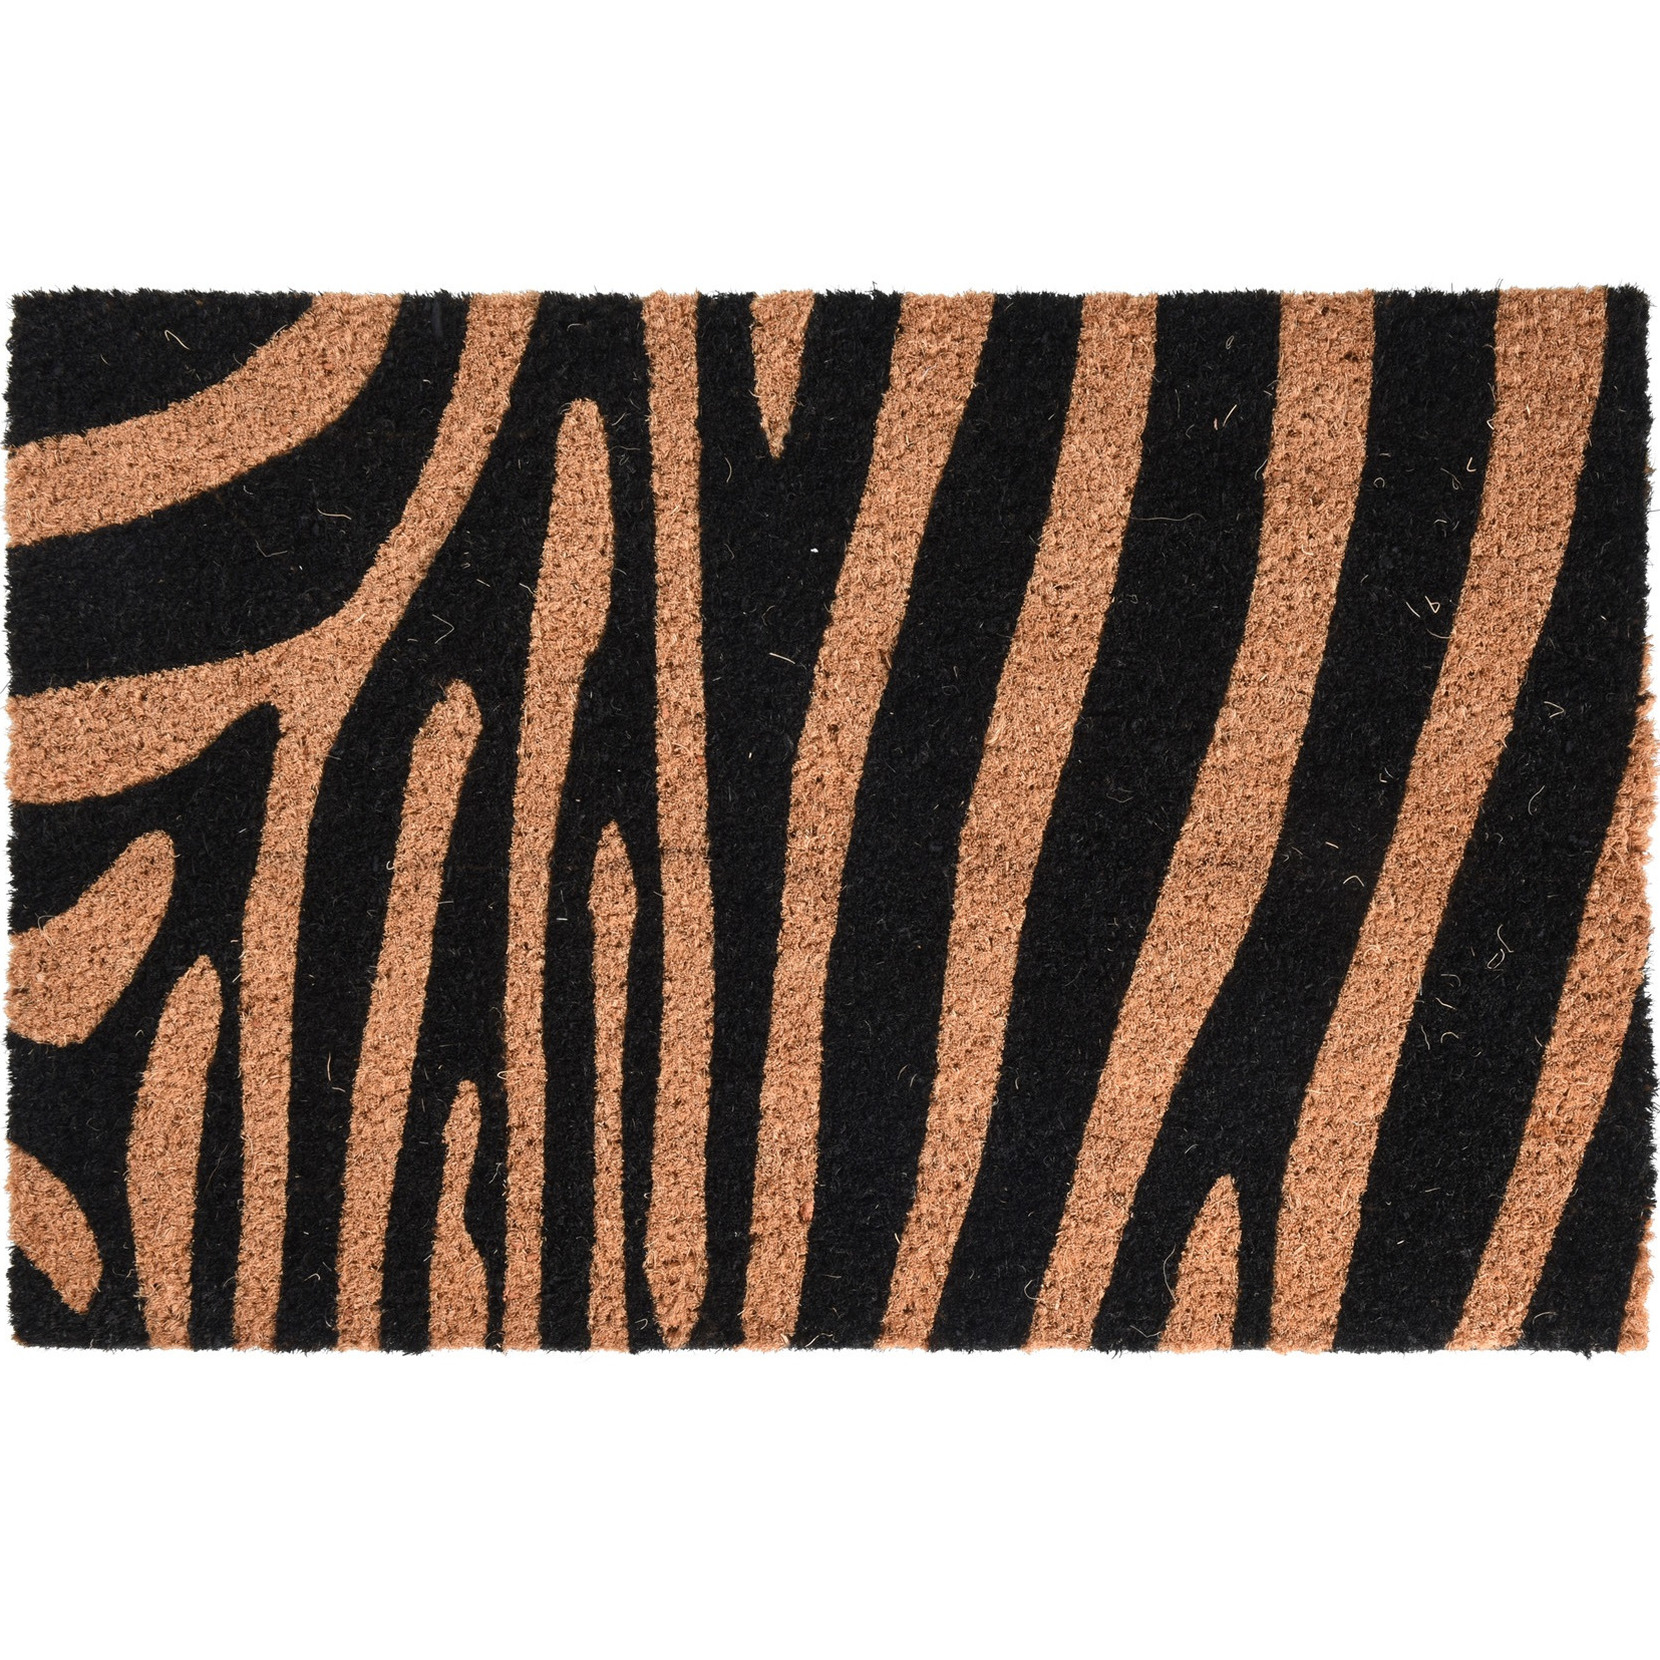 1x Dieren thema deurmatten/buitenmatten kokos tijger/zebra strepen 39 x 59 cm